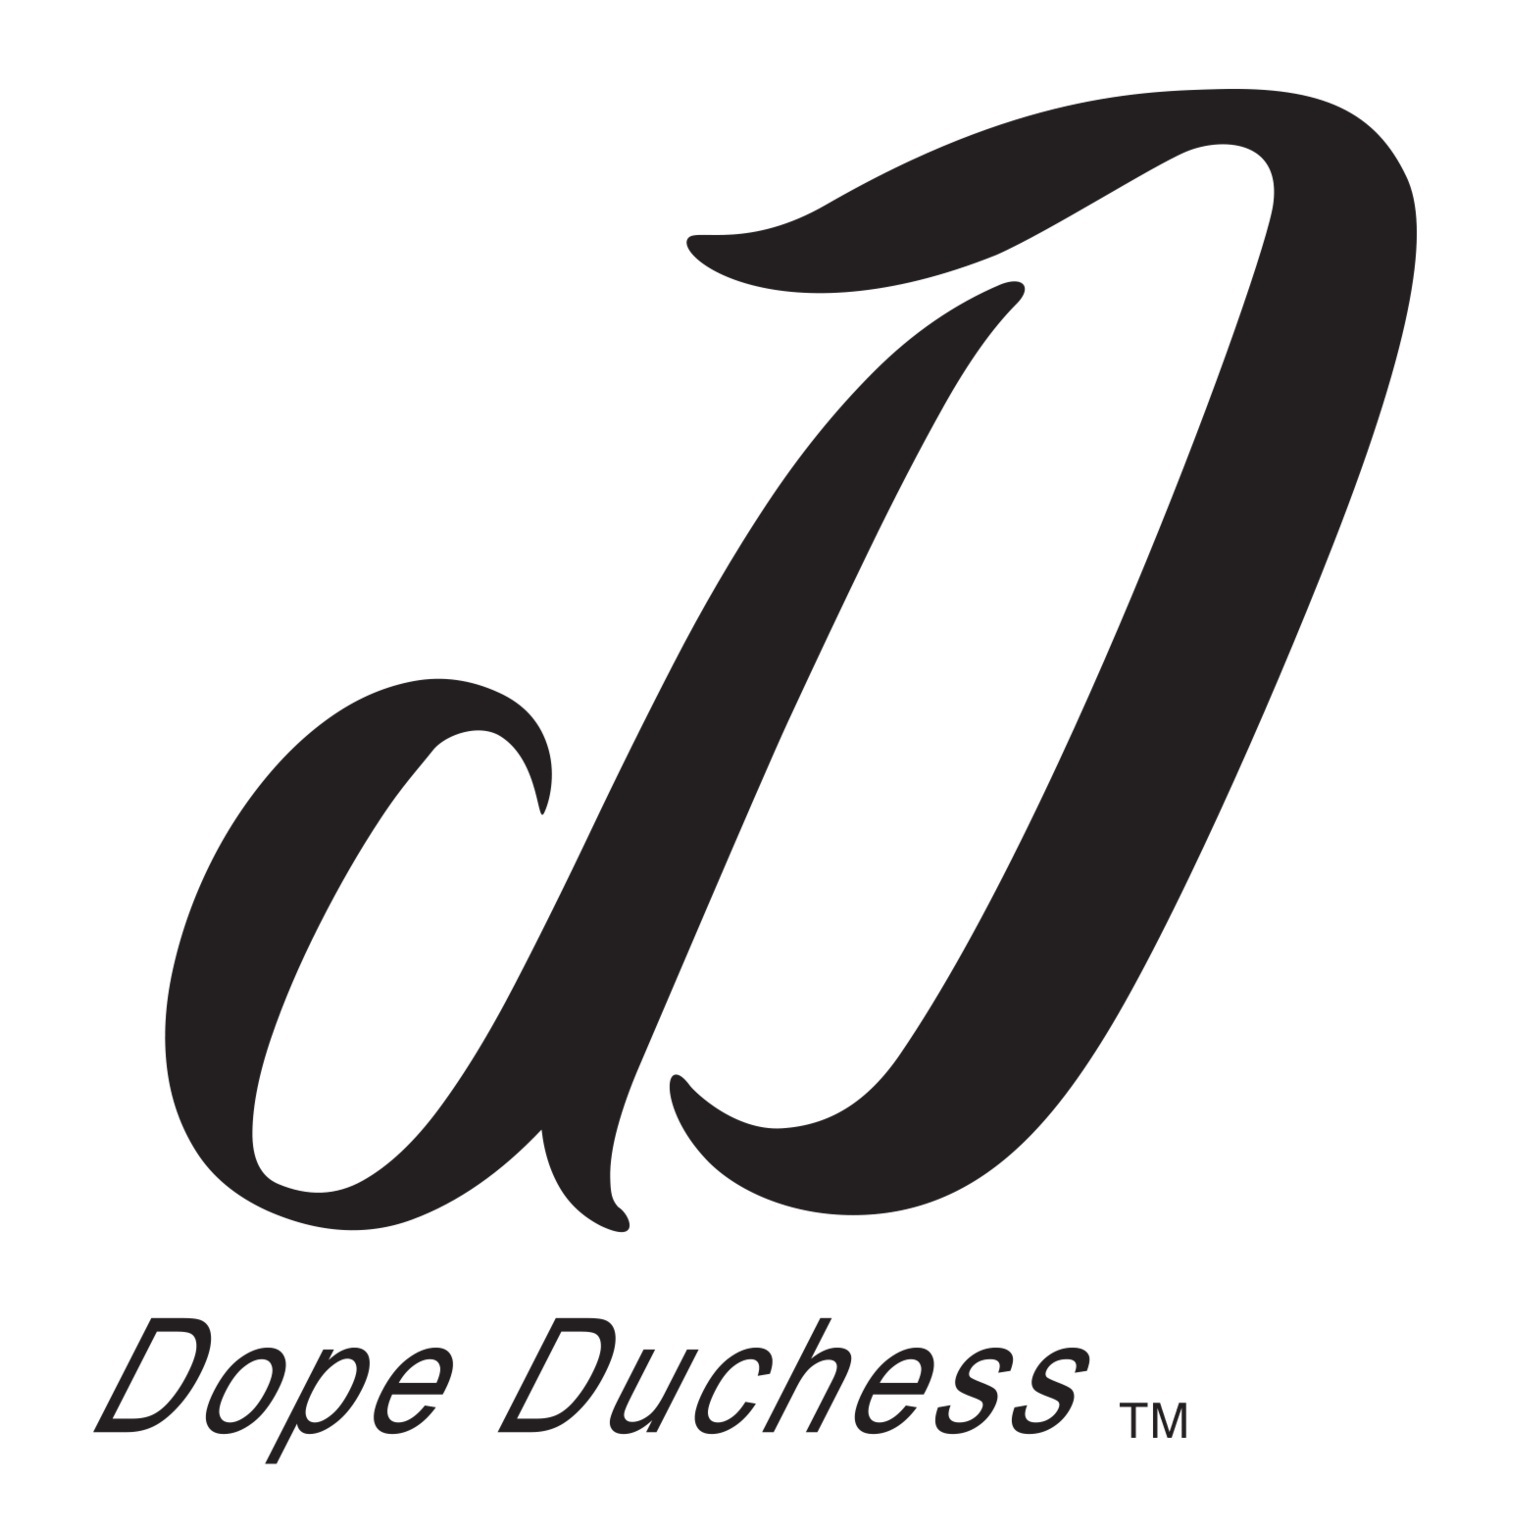 Dope Duchess